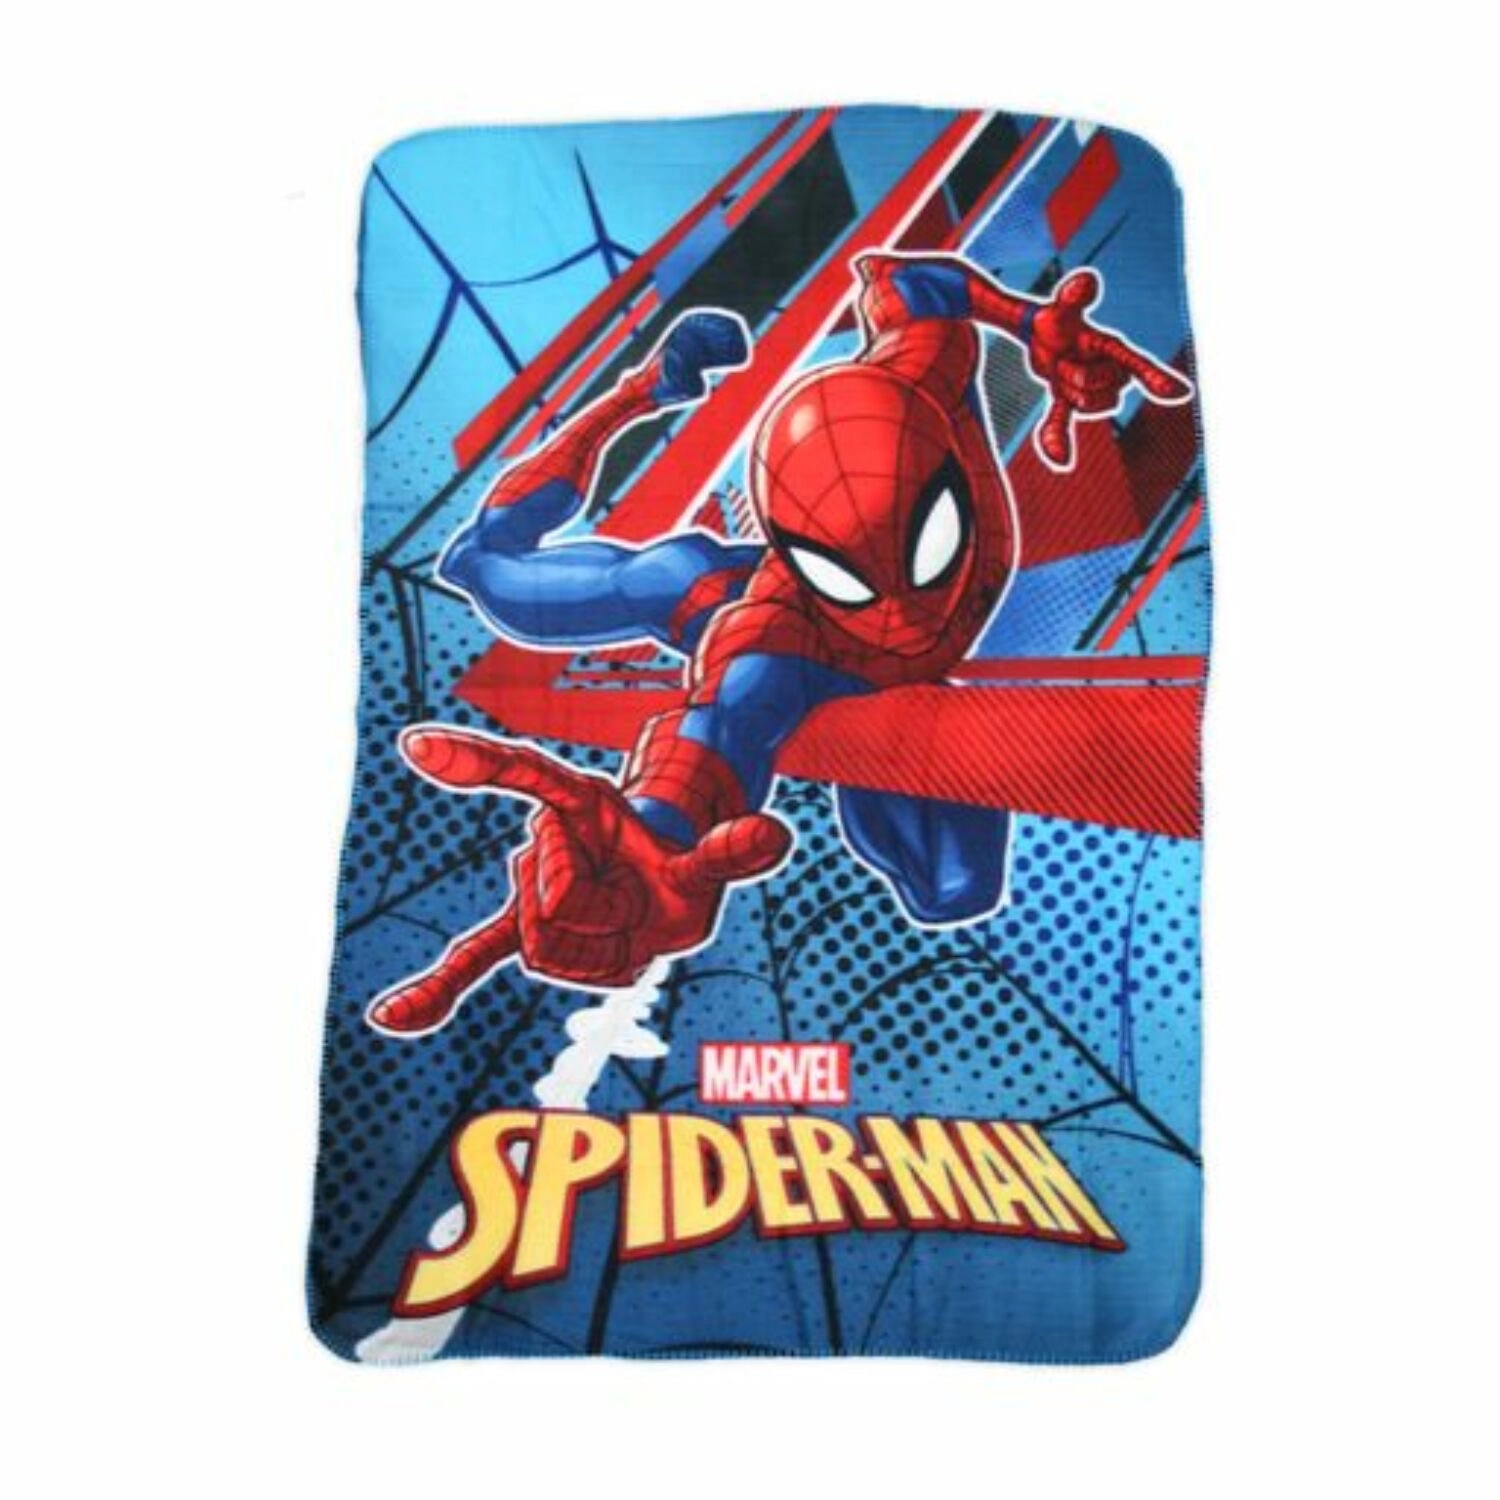 Pókember polár takaró - Spider-Man